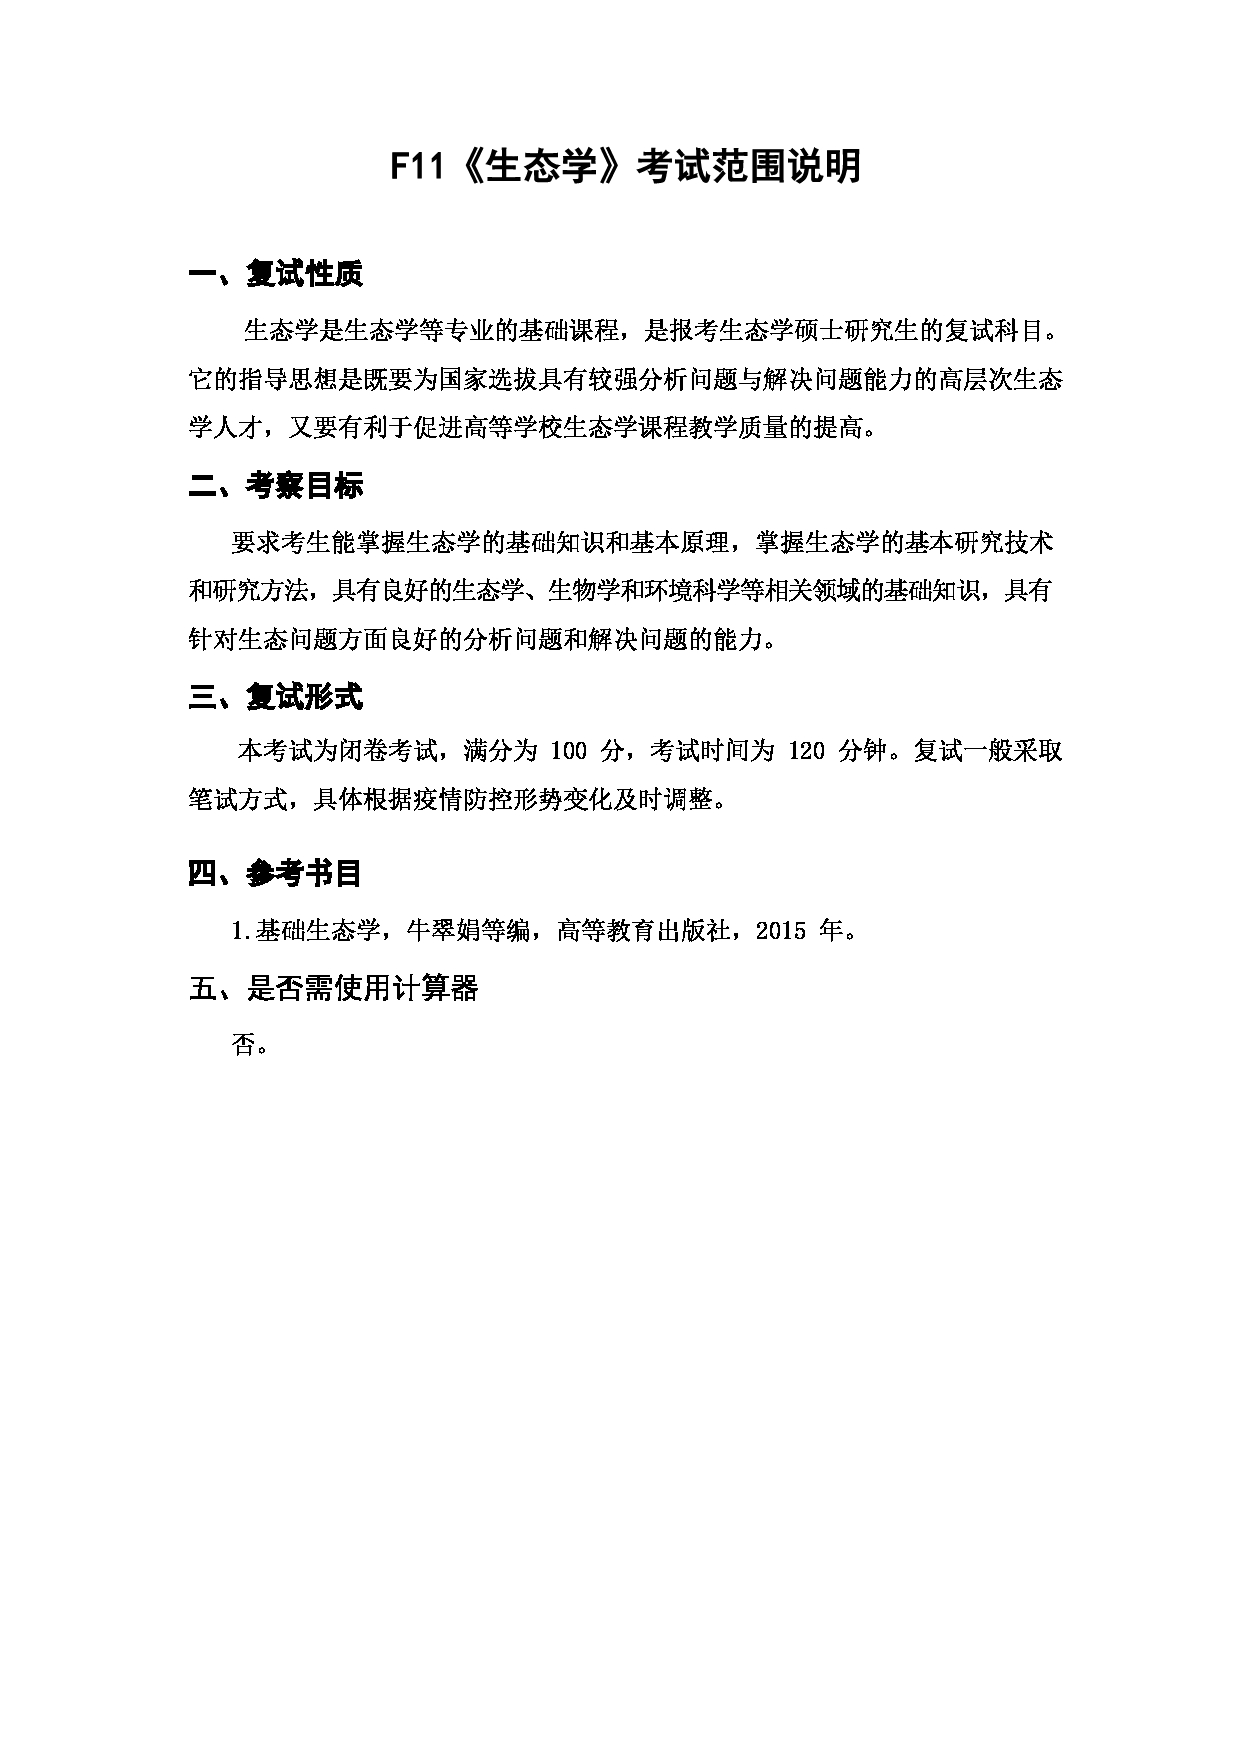 上海海洋大学2023年考研自命题科目  F11《生态学》 考试范围第1页